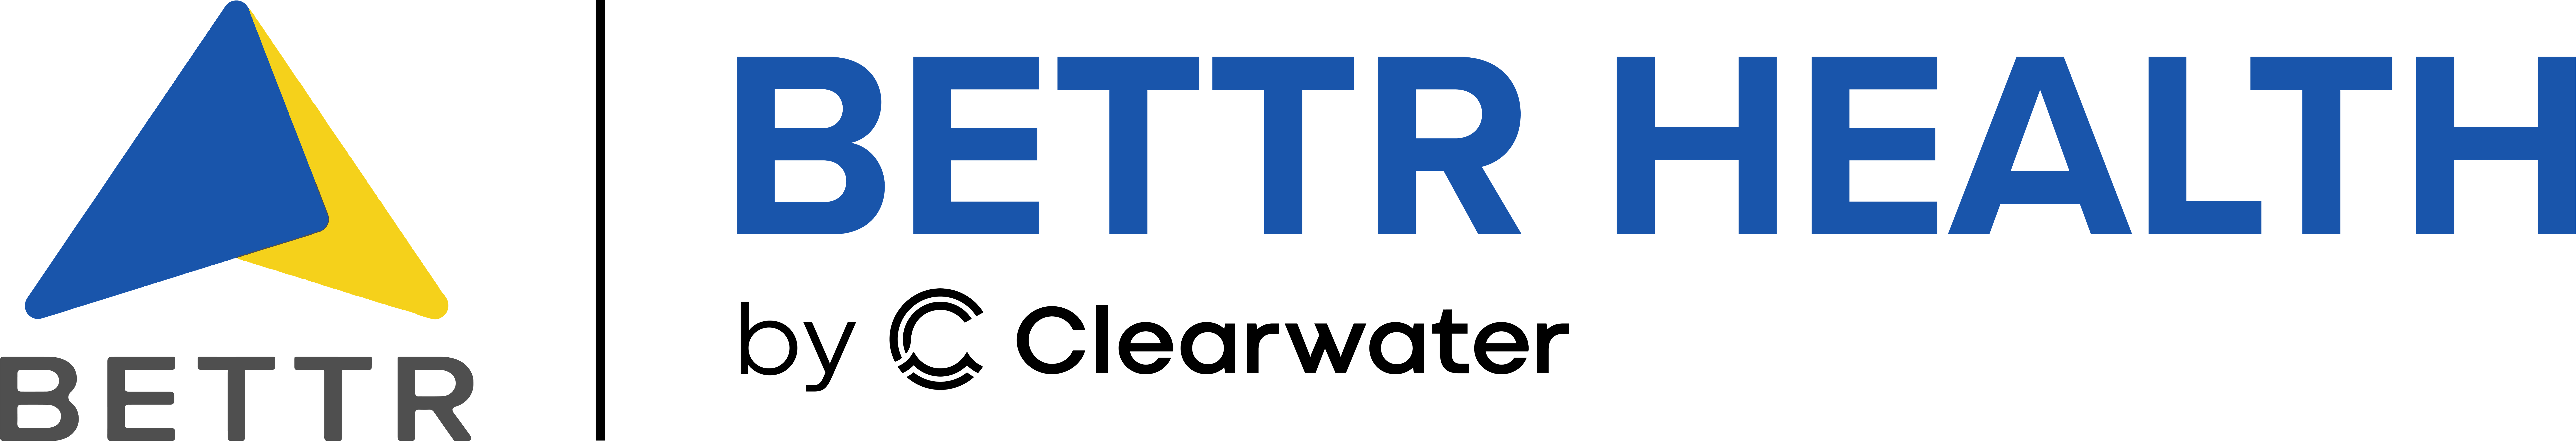 logo primary